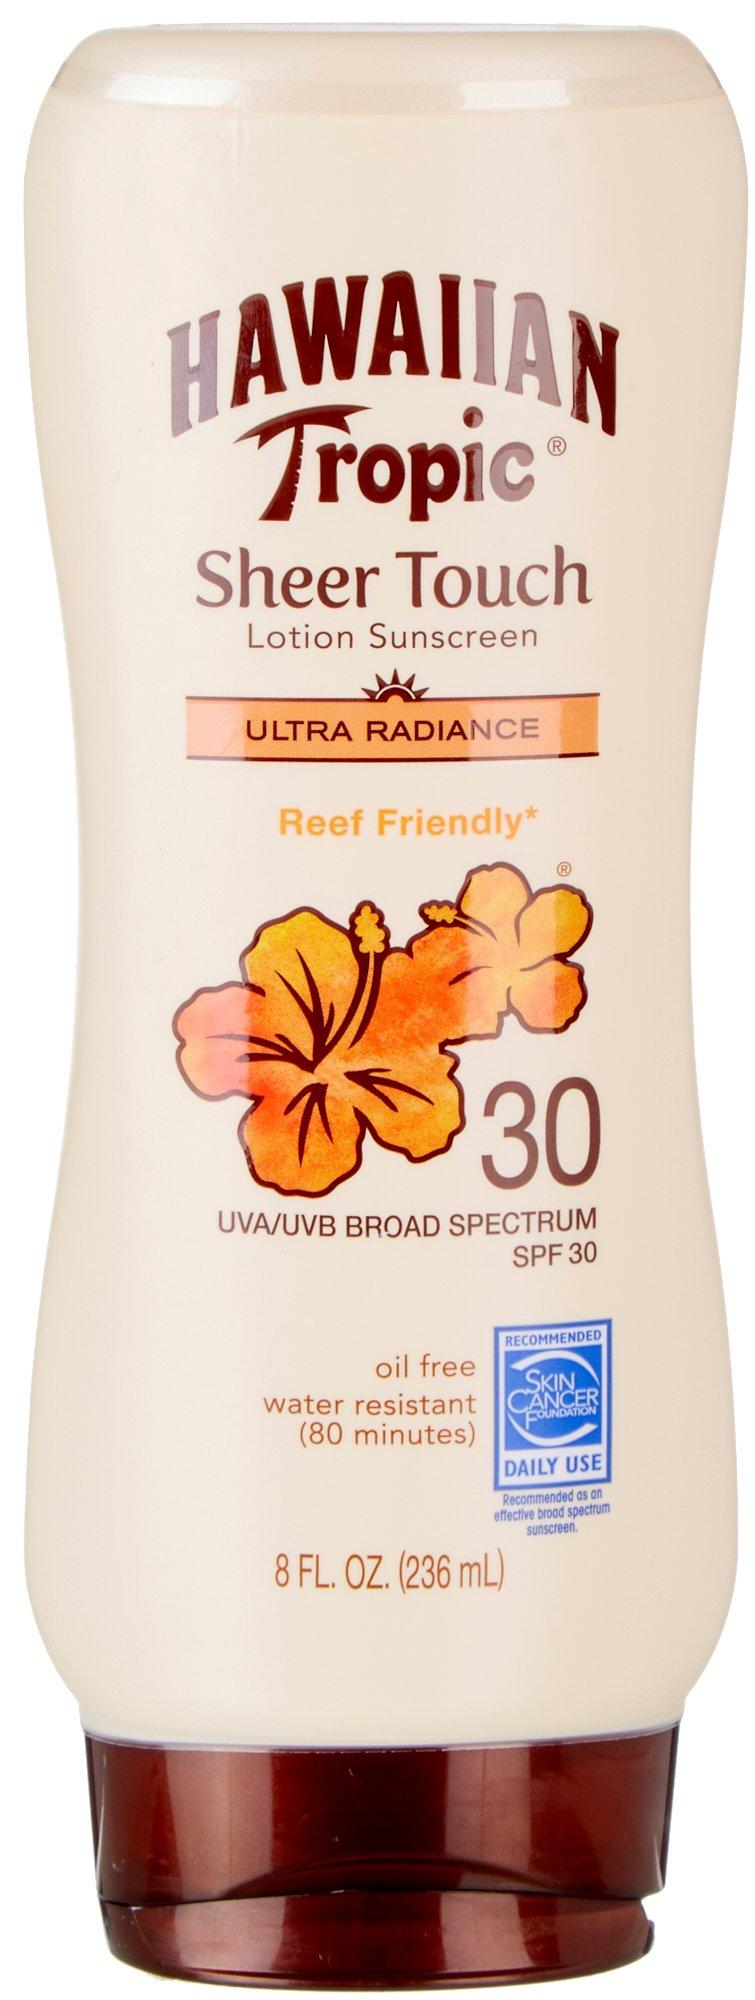 Hawaiian Tropic Sheer Touch Lotion Sunscreen 8 fl.